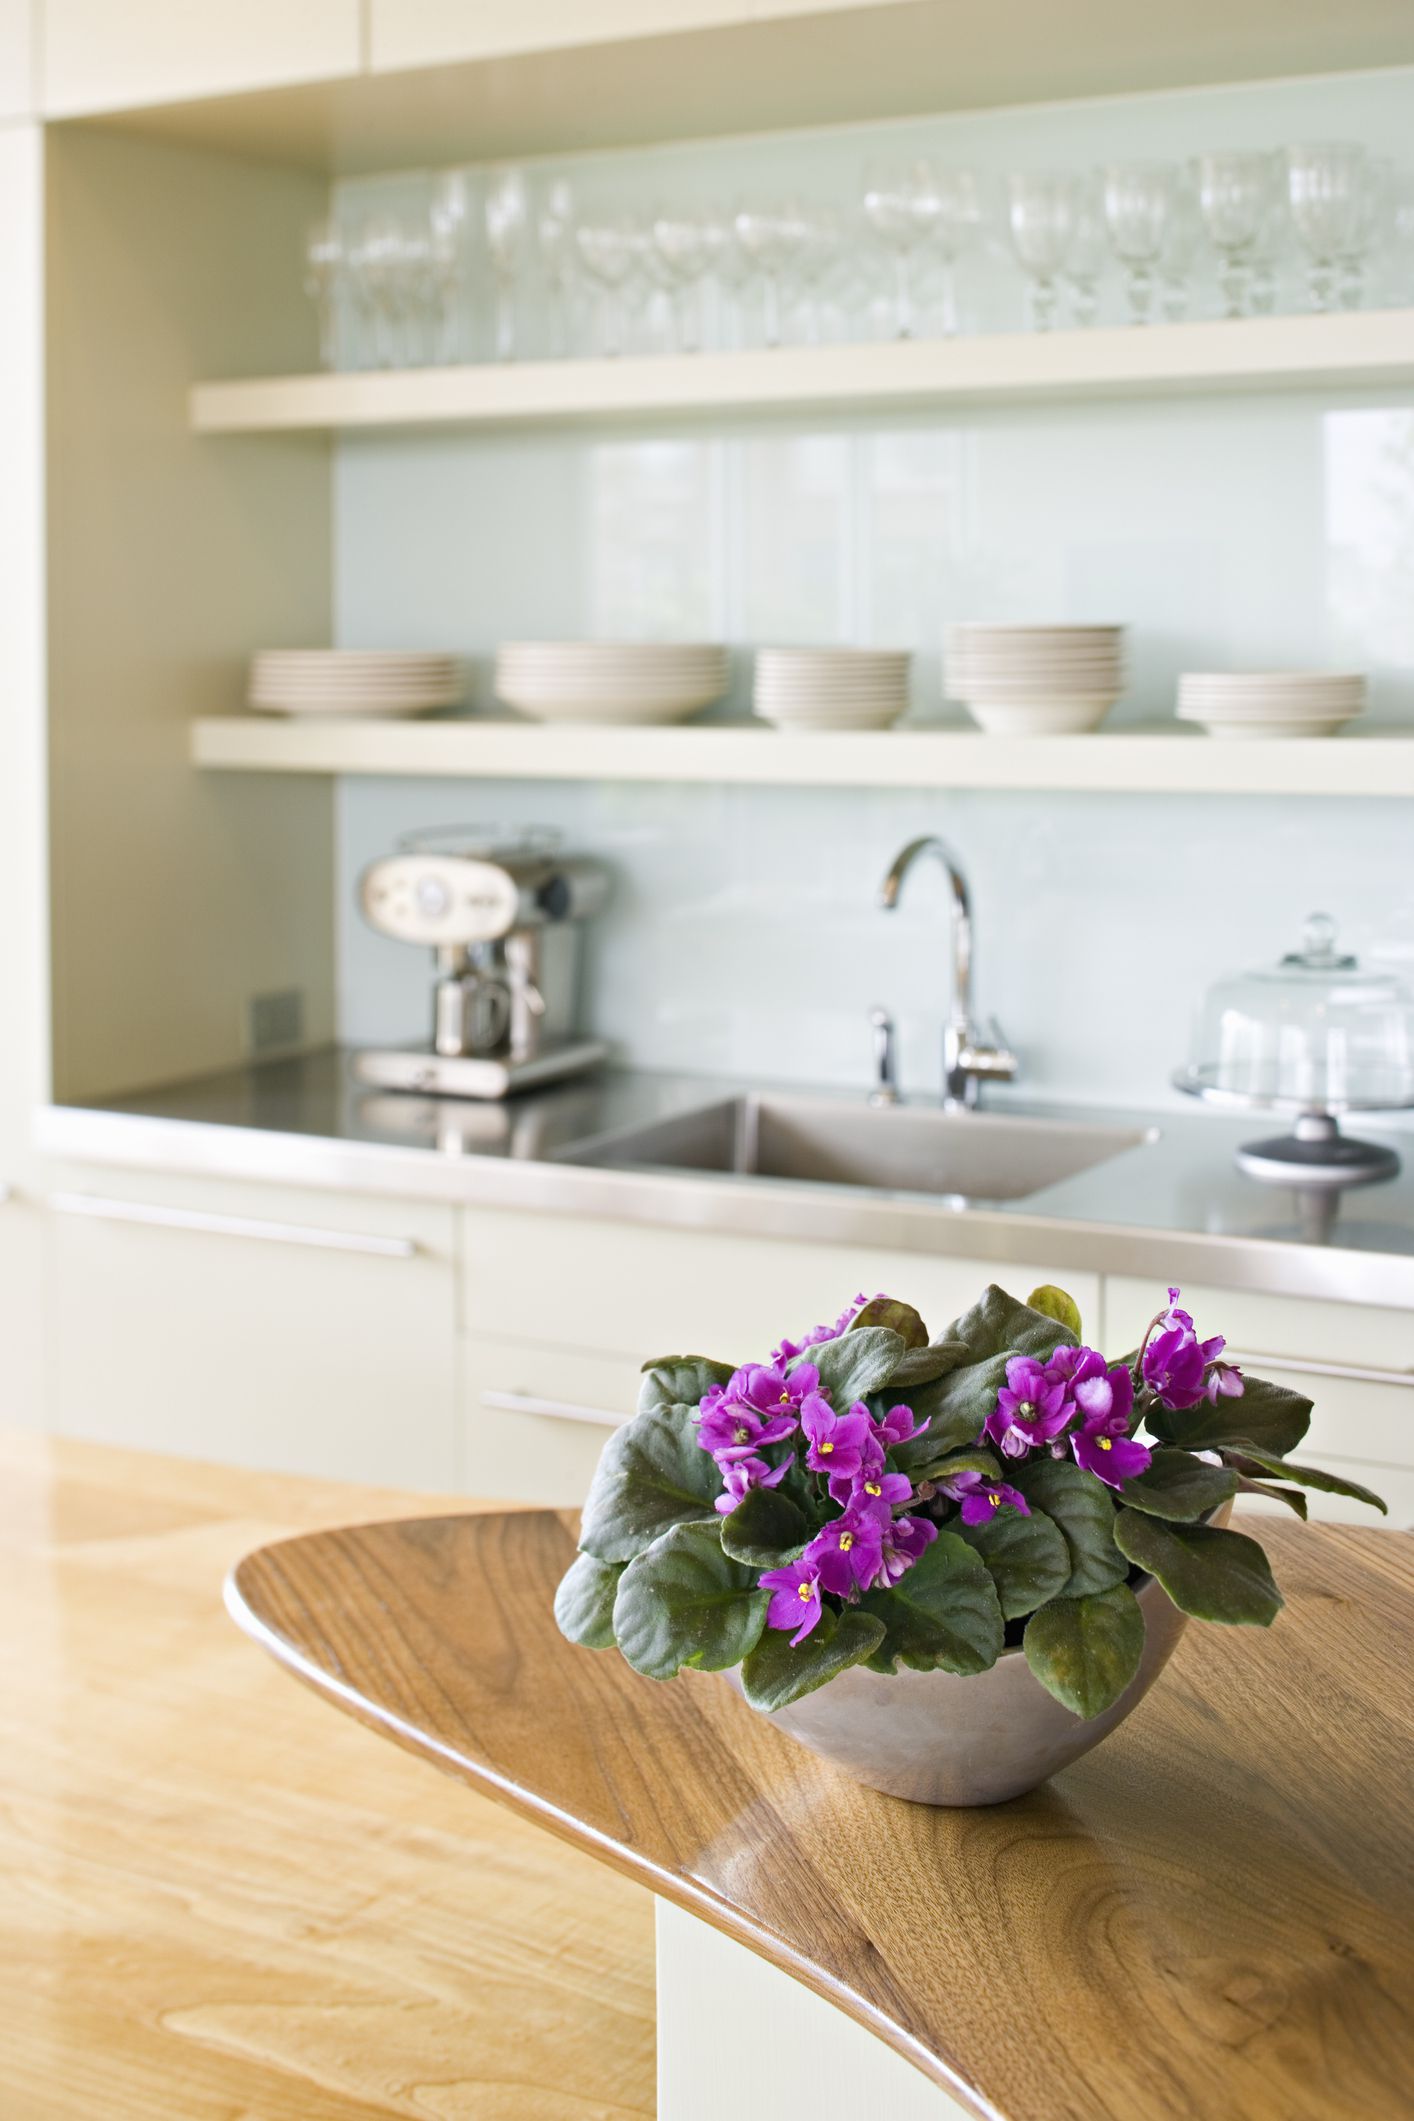 Đối với những người thích cắm hoa trong nhà bếp, hoa violet châu Phi ( Sauntpaulia ) là cây thay thế hoàn hảo cho cây trồng trong nhà! Một bông hoa violet châu Phi hạnh phúc sẽ ra hoa gần như quanh năm và chúng có nhiều màu sắc đẹp mắt. Những cây trồng trong nhà nhỏ gọn này thích ánh sáng gián tiếp, tươi sáng và tưới nước thường xuyên.